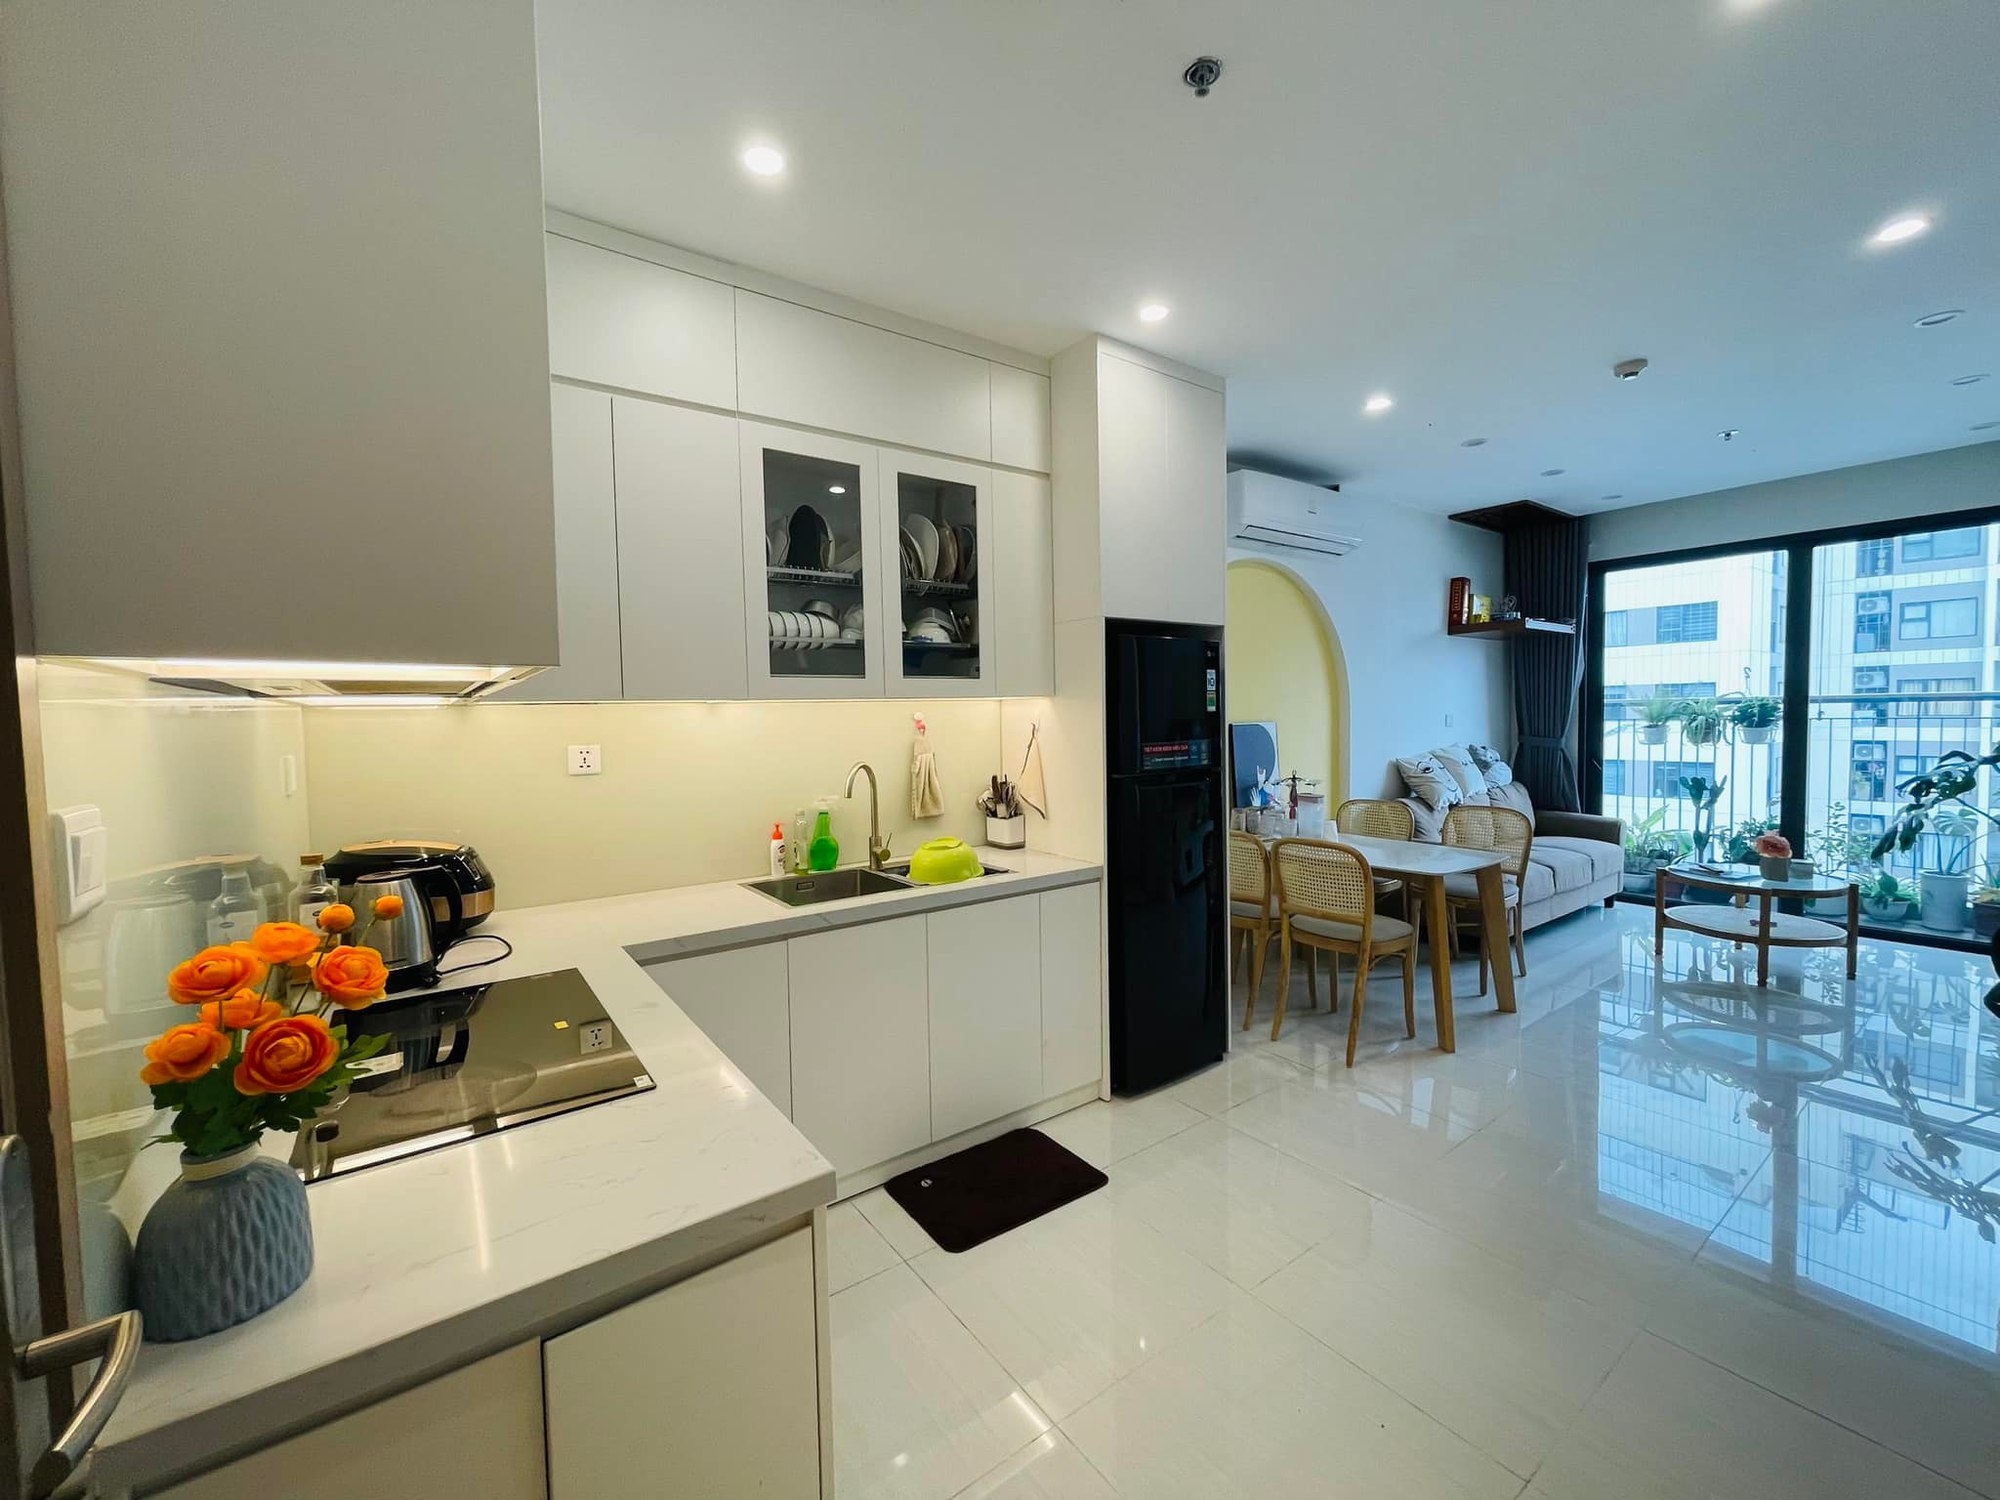 Giá thuê căn hộ tại Hà Nội tăng mạnh - Ảnh 1.